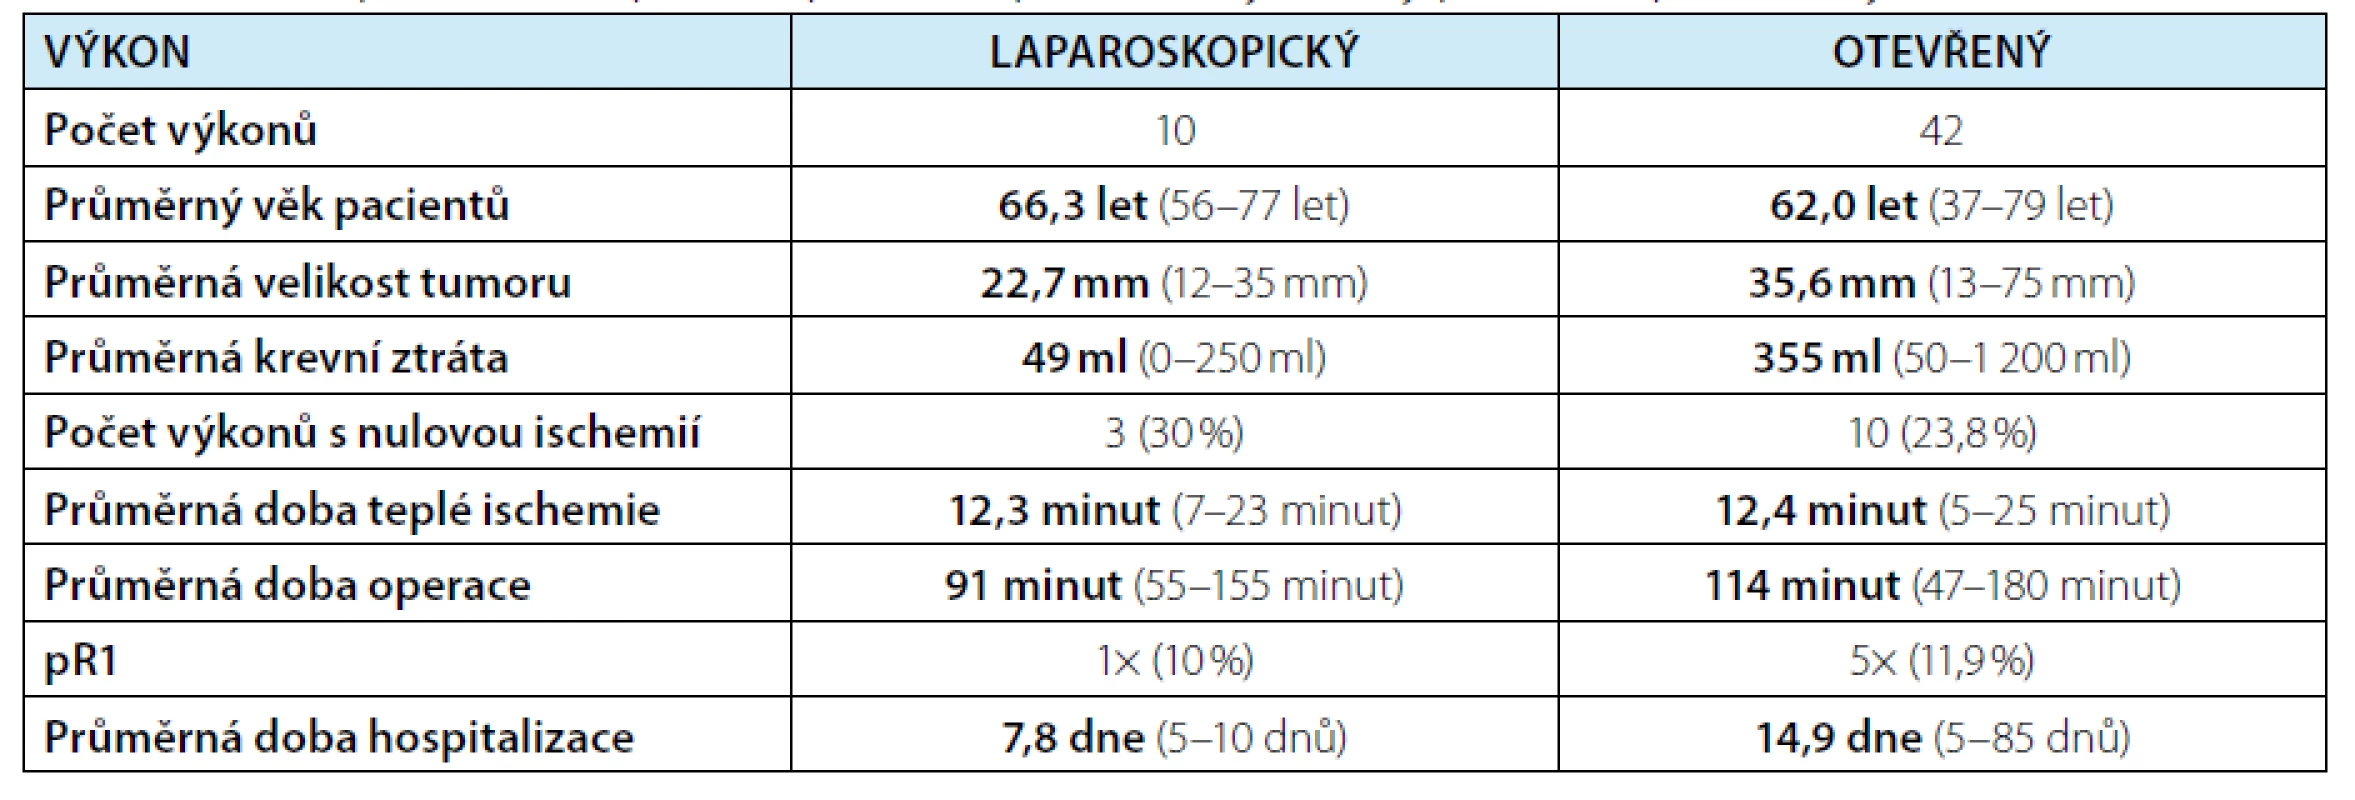 Porovnání laparoskopické a otevřené resekce tumoru solitární ledviny<br>
Tab. 1. A comparison of laparoscopic and open solitary kidney partial nephrectomy